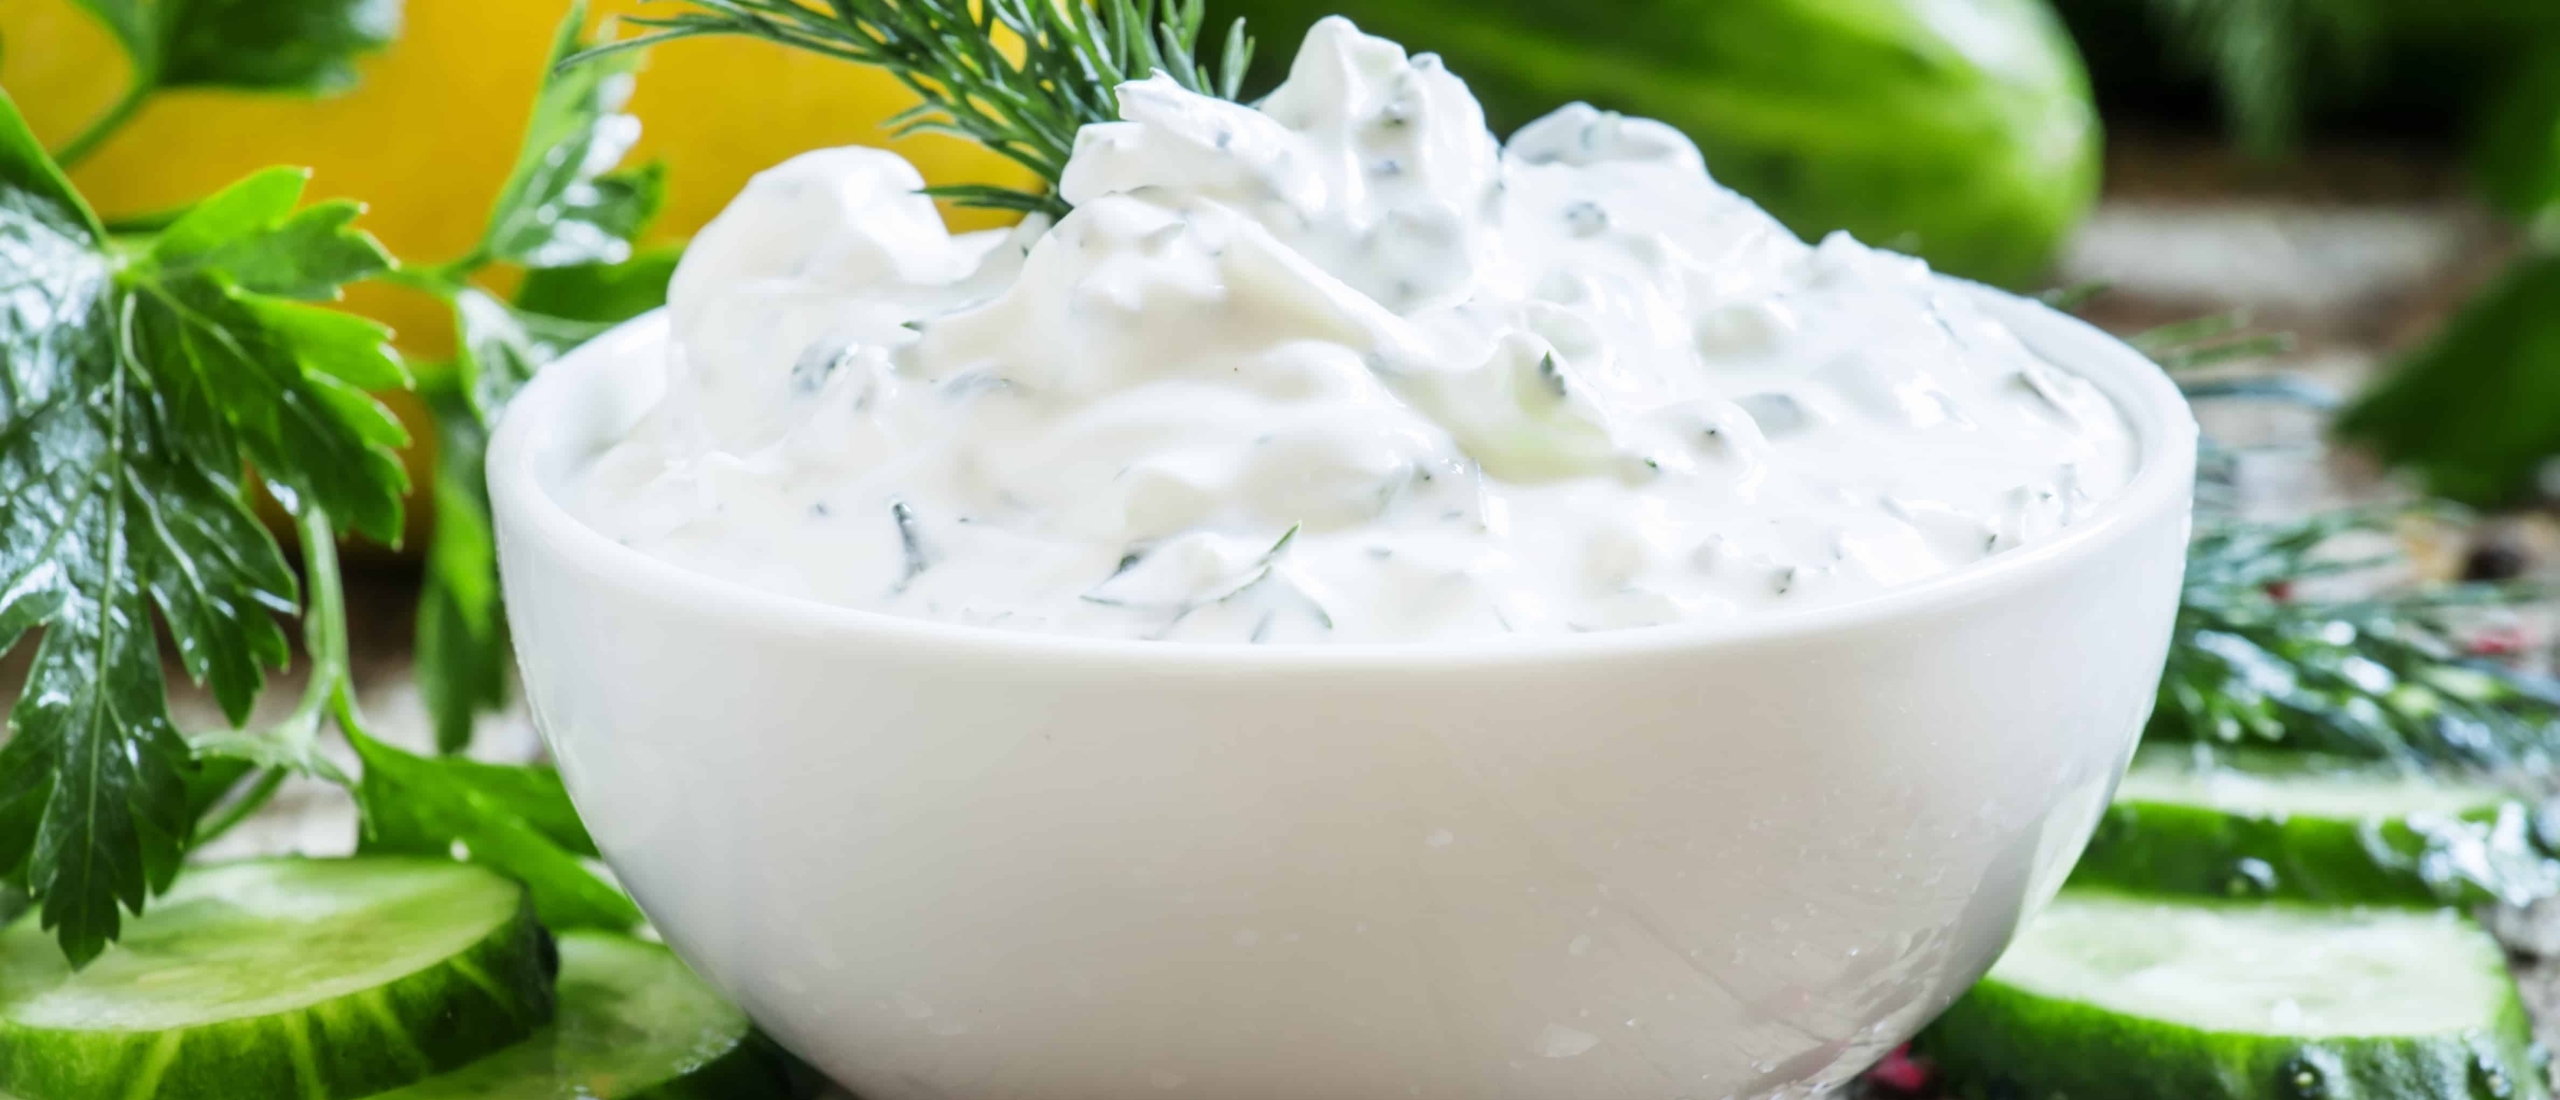 Griekse yoghurt met komkommer en knoflook